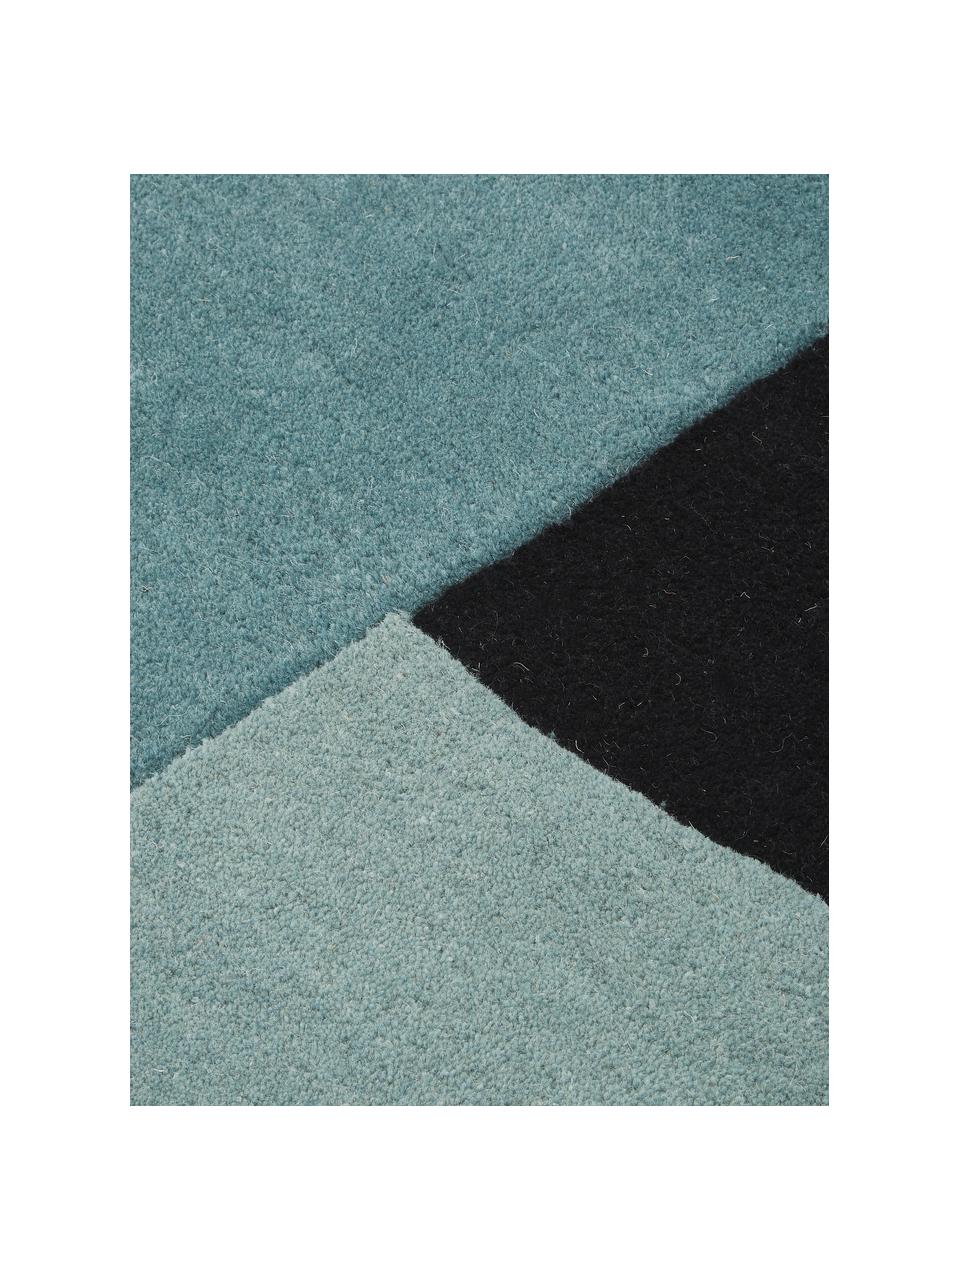 Handgetufteter Wollteppich Zenia in Beige/Blau mit abstraktem Muster, 100% Wolle, Cremefarben, Blau, Schwarz, B 170 x L 240 cm (Größe M)